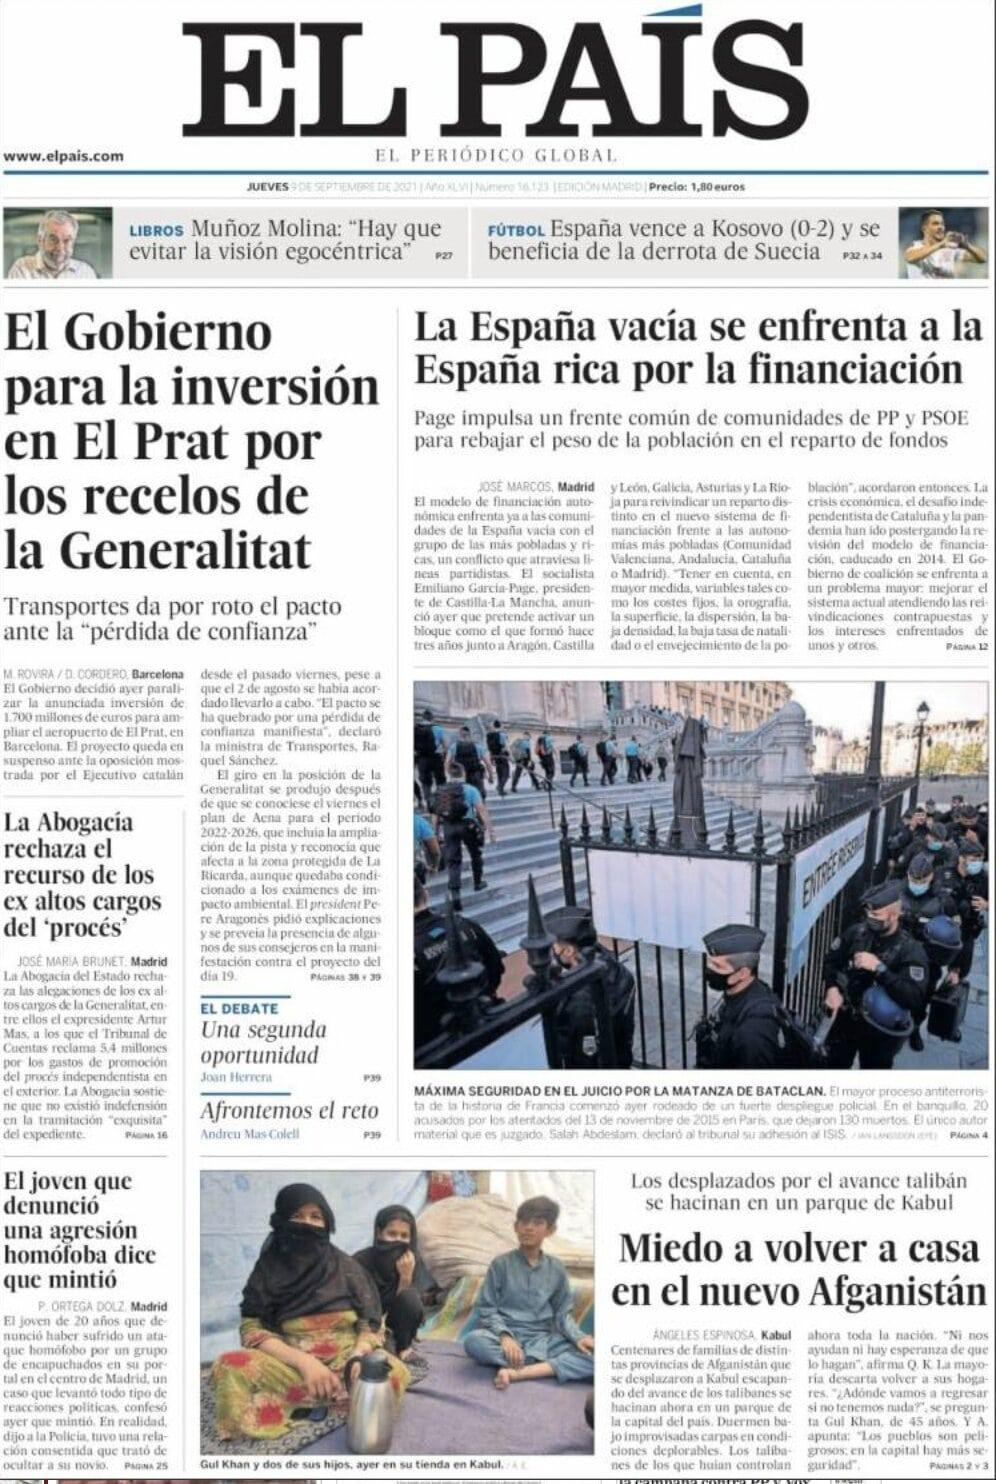 Portada de 'El País' del 9 de septiembre de 2021 / KIOSKO.NET